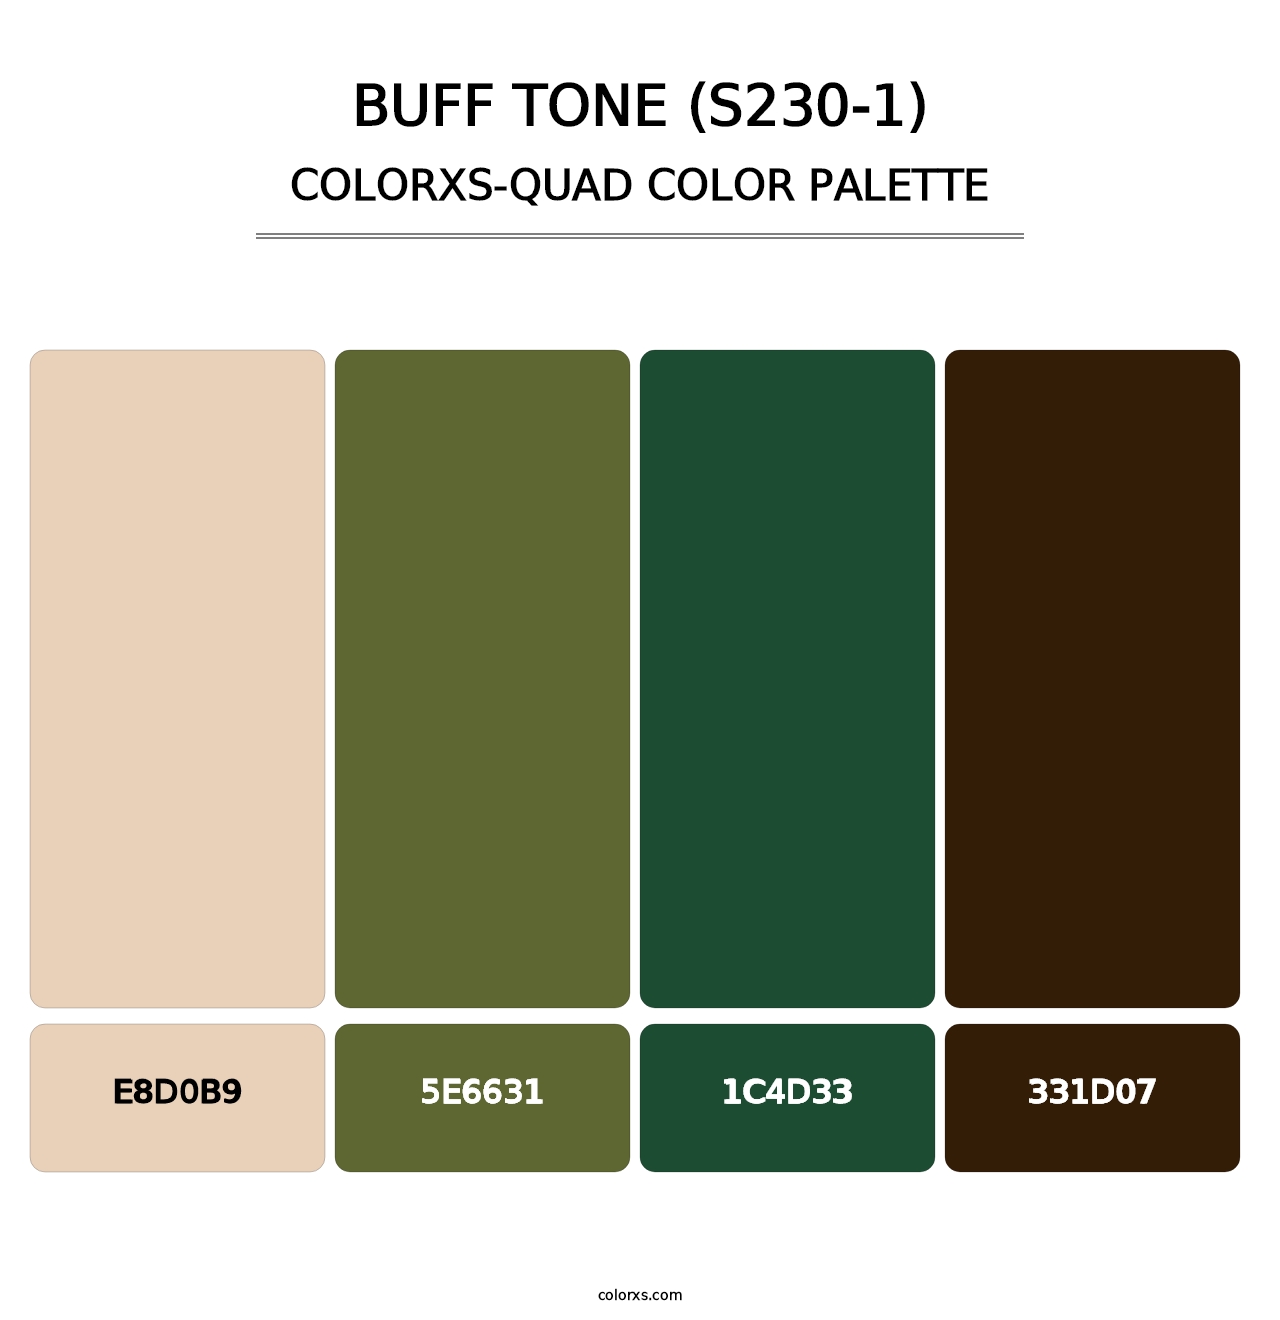 Buff Tone (S230-1) - Colorxs Quad Palette